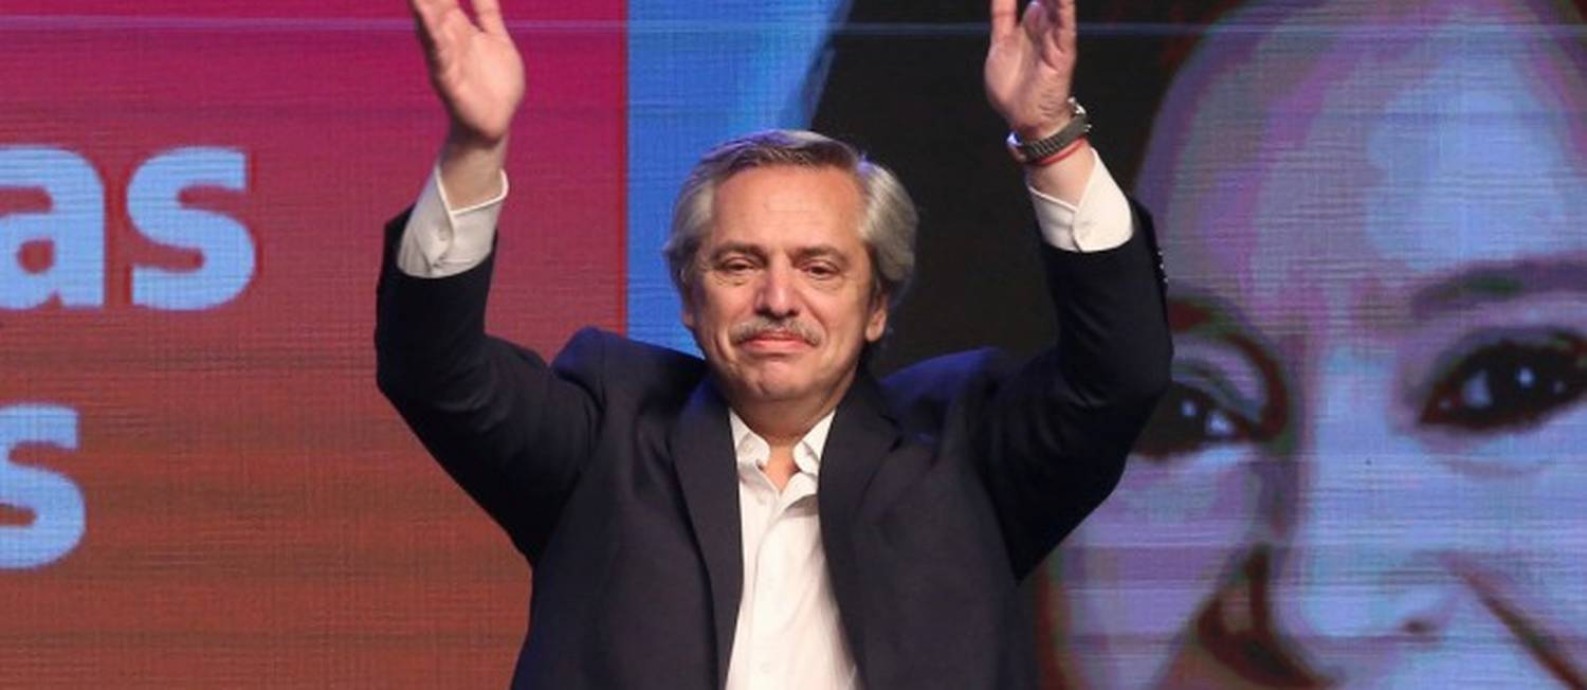 Alberto Fernández celebrando sua vitória logo após anúncio de resultado oficial Foto: AGUSTIN MARCARIAN / REUTERS